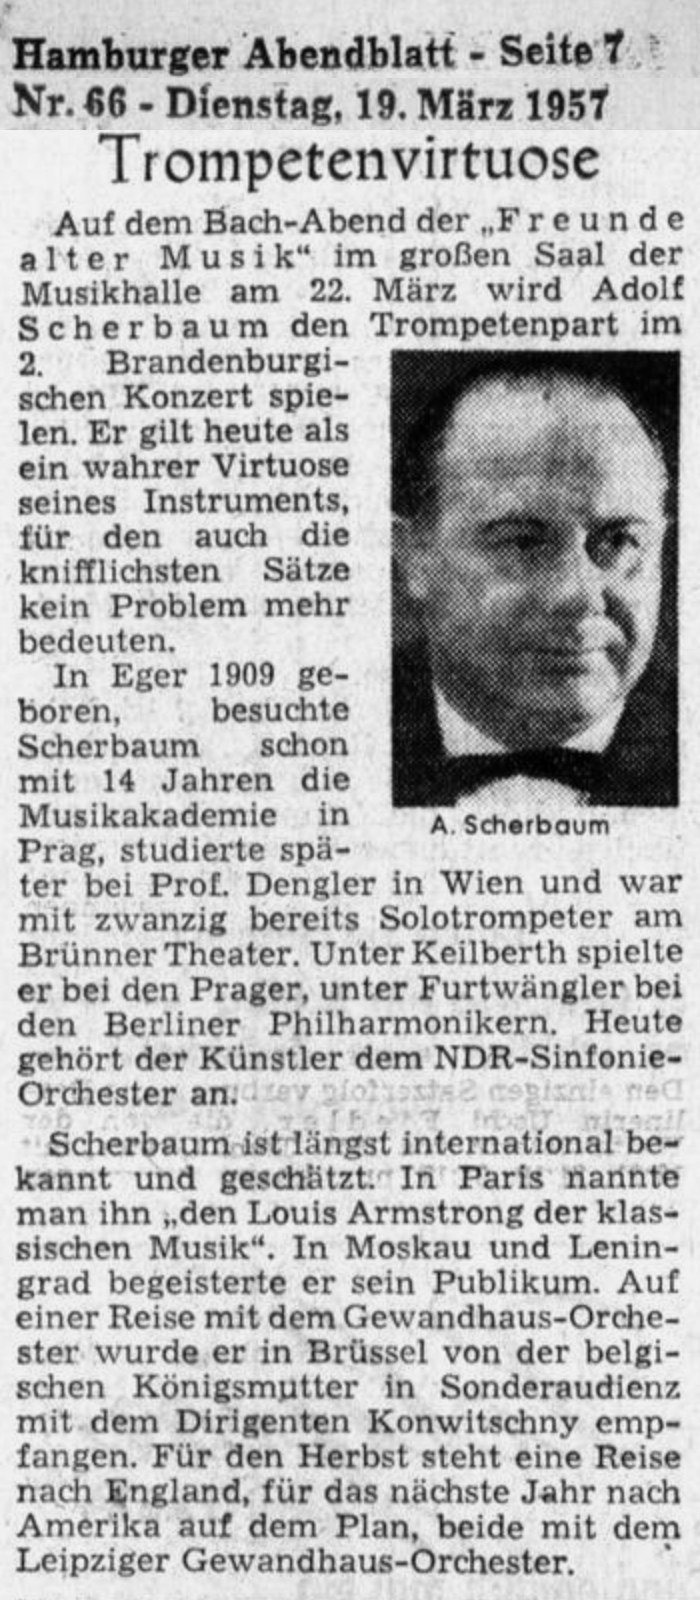 Scherbaum Adolf Hamburger Abendblatt 19570319 HA 007 extrait